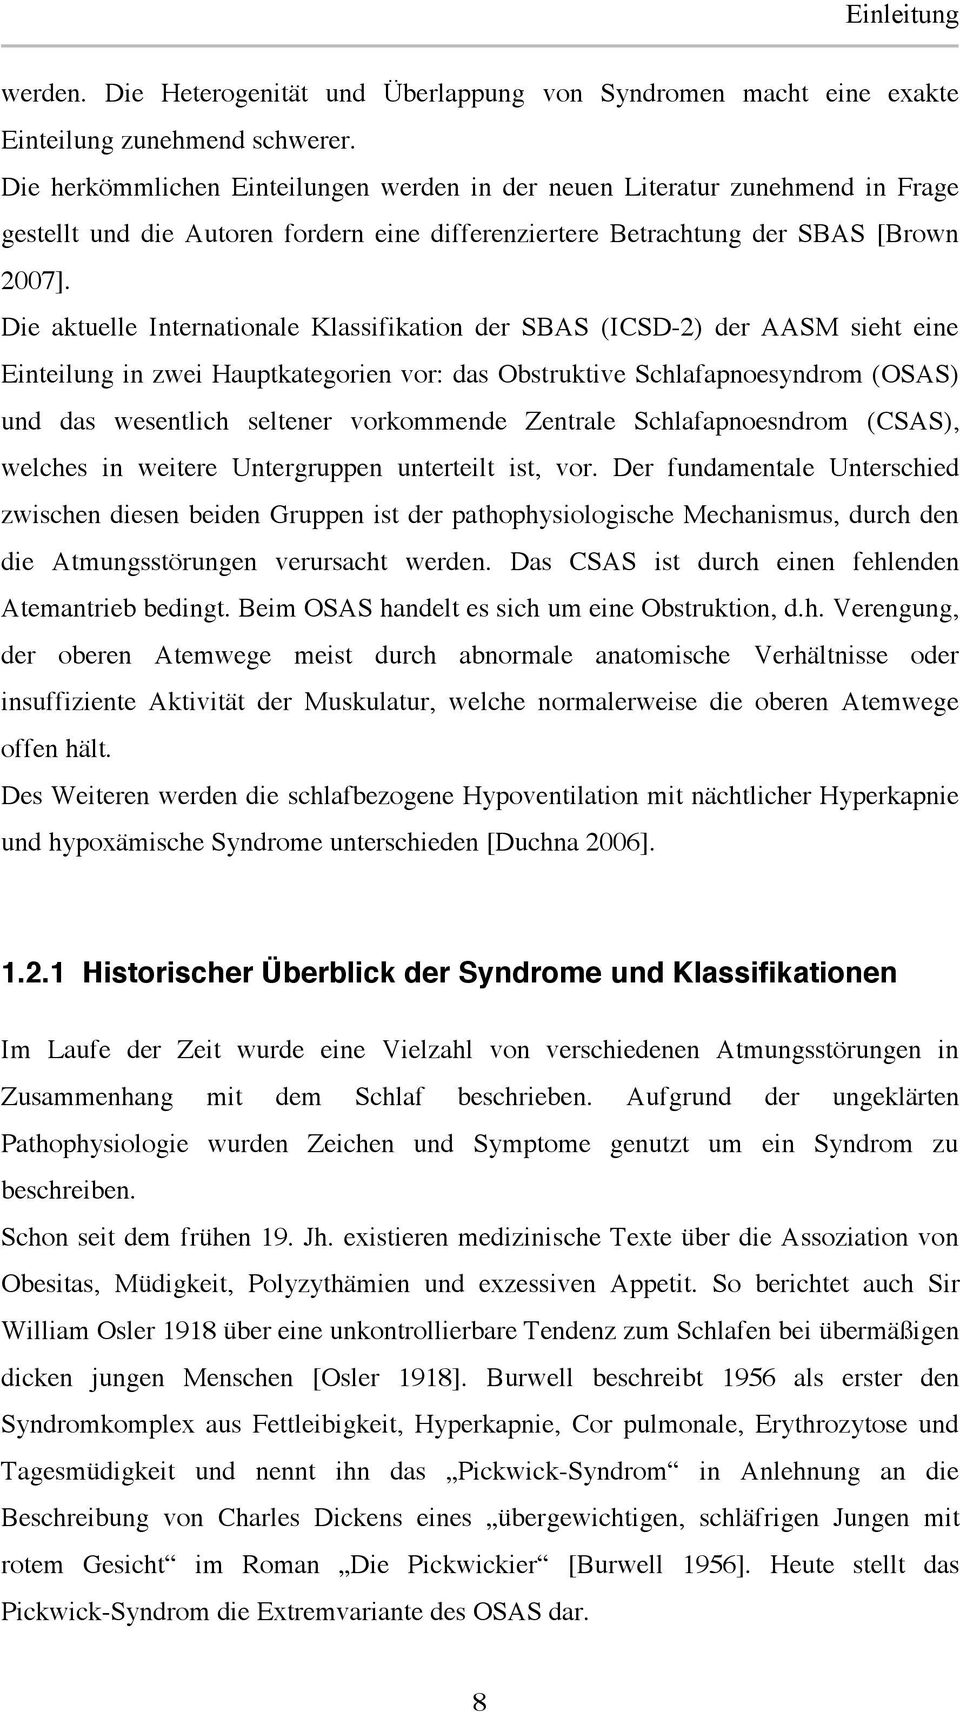 Die aktuelle Internationale Klassifikation der SBAS (ICSD-2) der AASM sieht eine Einteilung in zwei Hauptkategorien vor: das Obstruktive Schlafapnoesyndrom (OSAS) und das wesentlich seltener